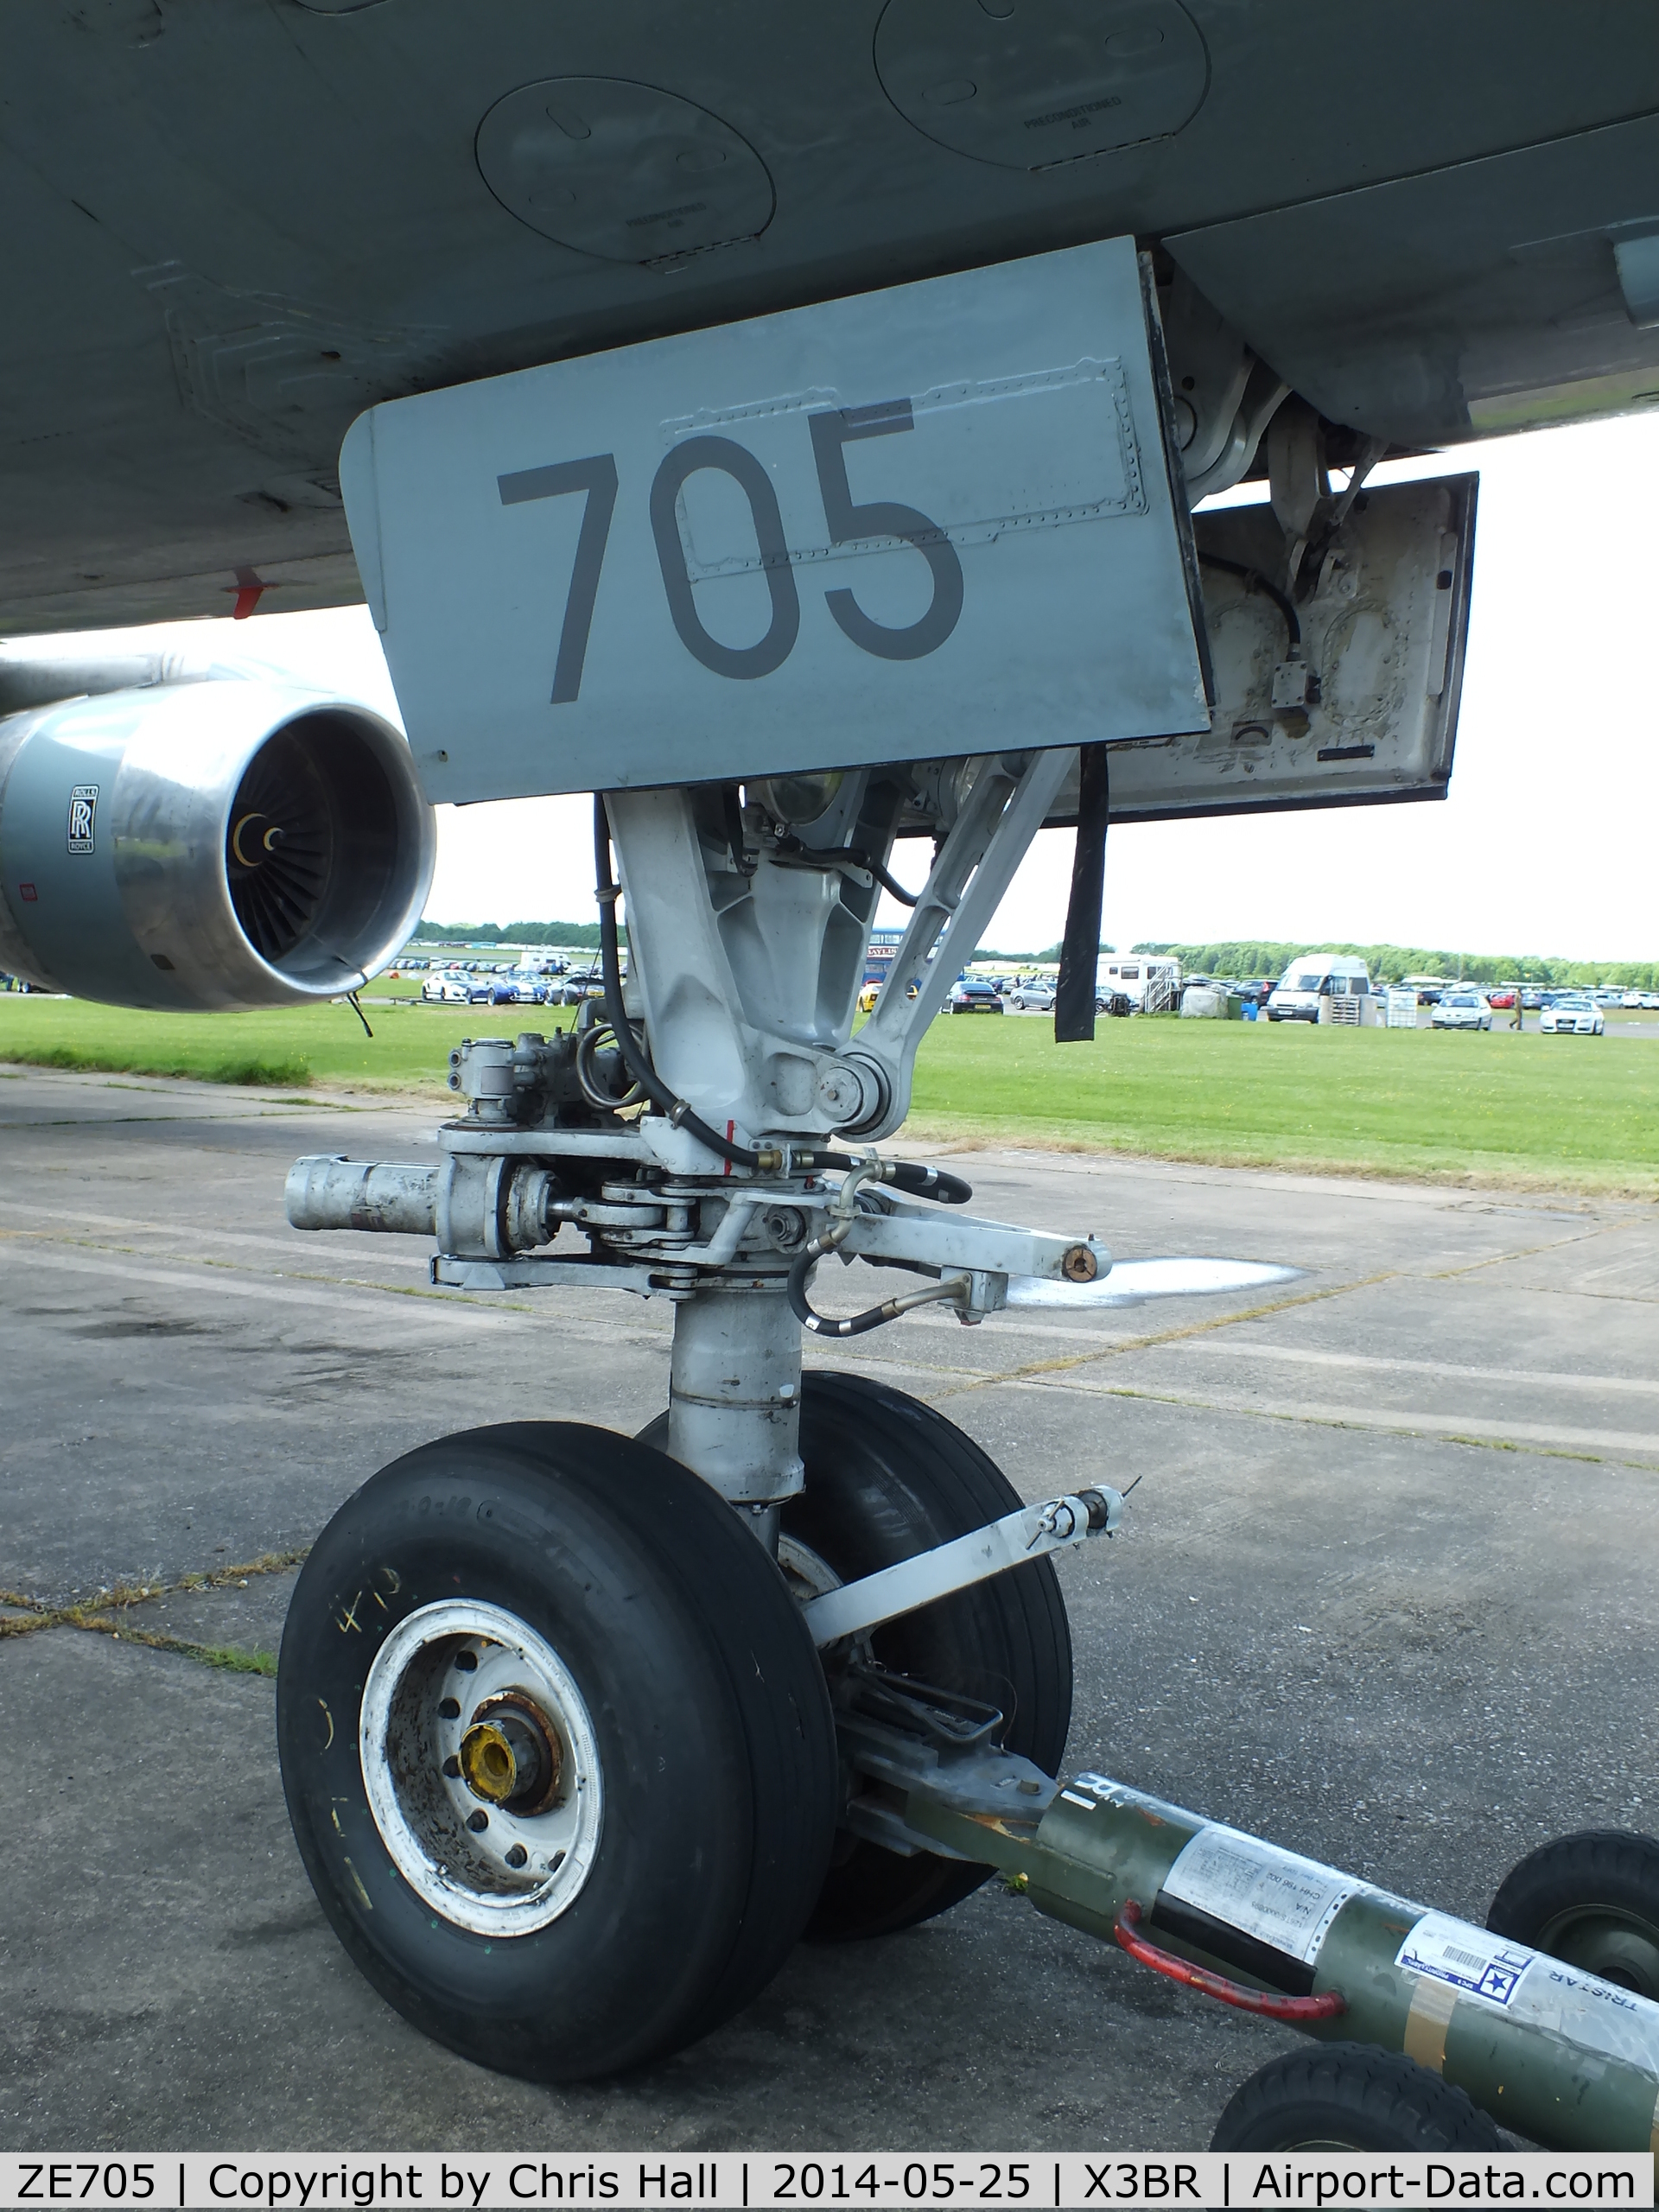 ZE705, Lockheed L-1011-385-3 TriStar C2 (500) C/N 193Y-1188, nose gear